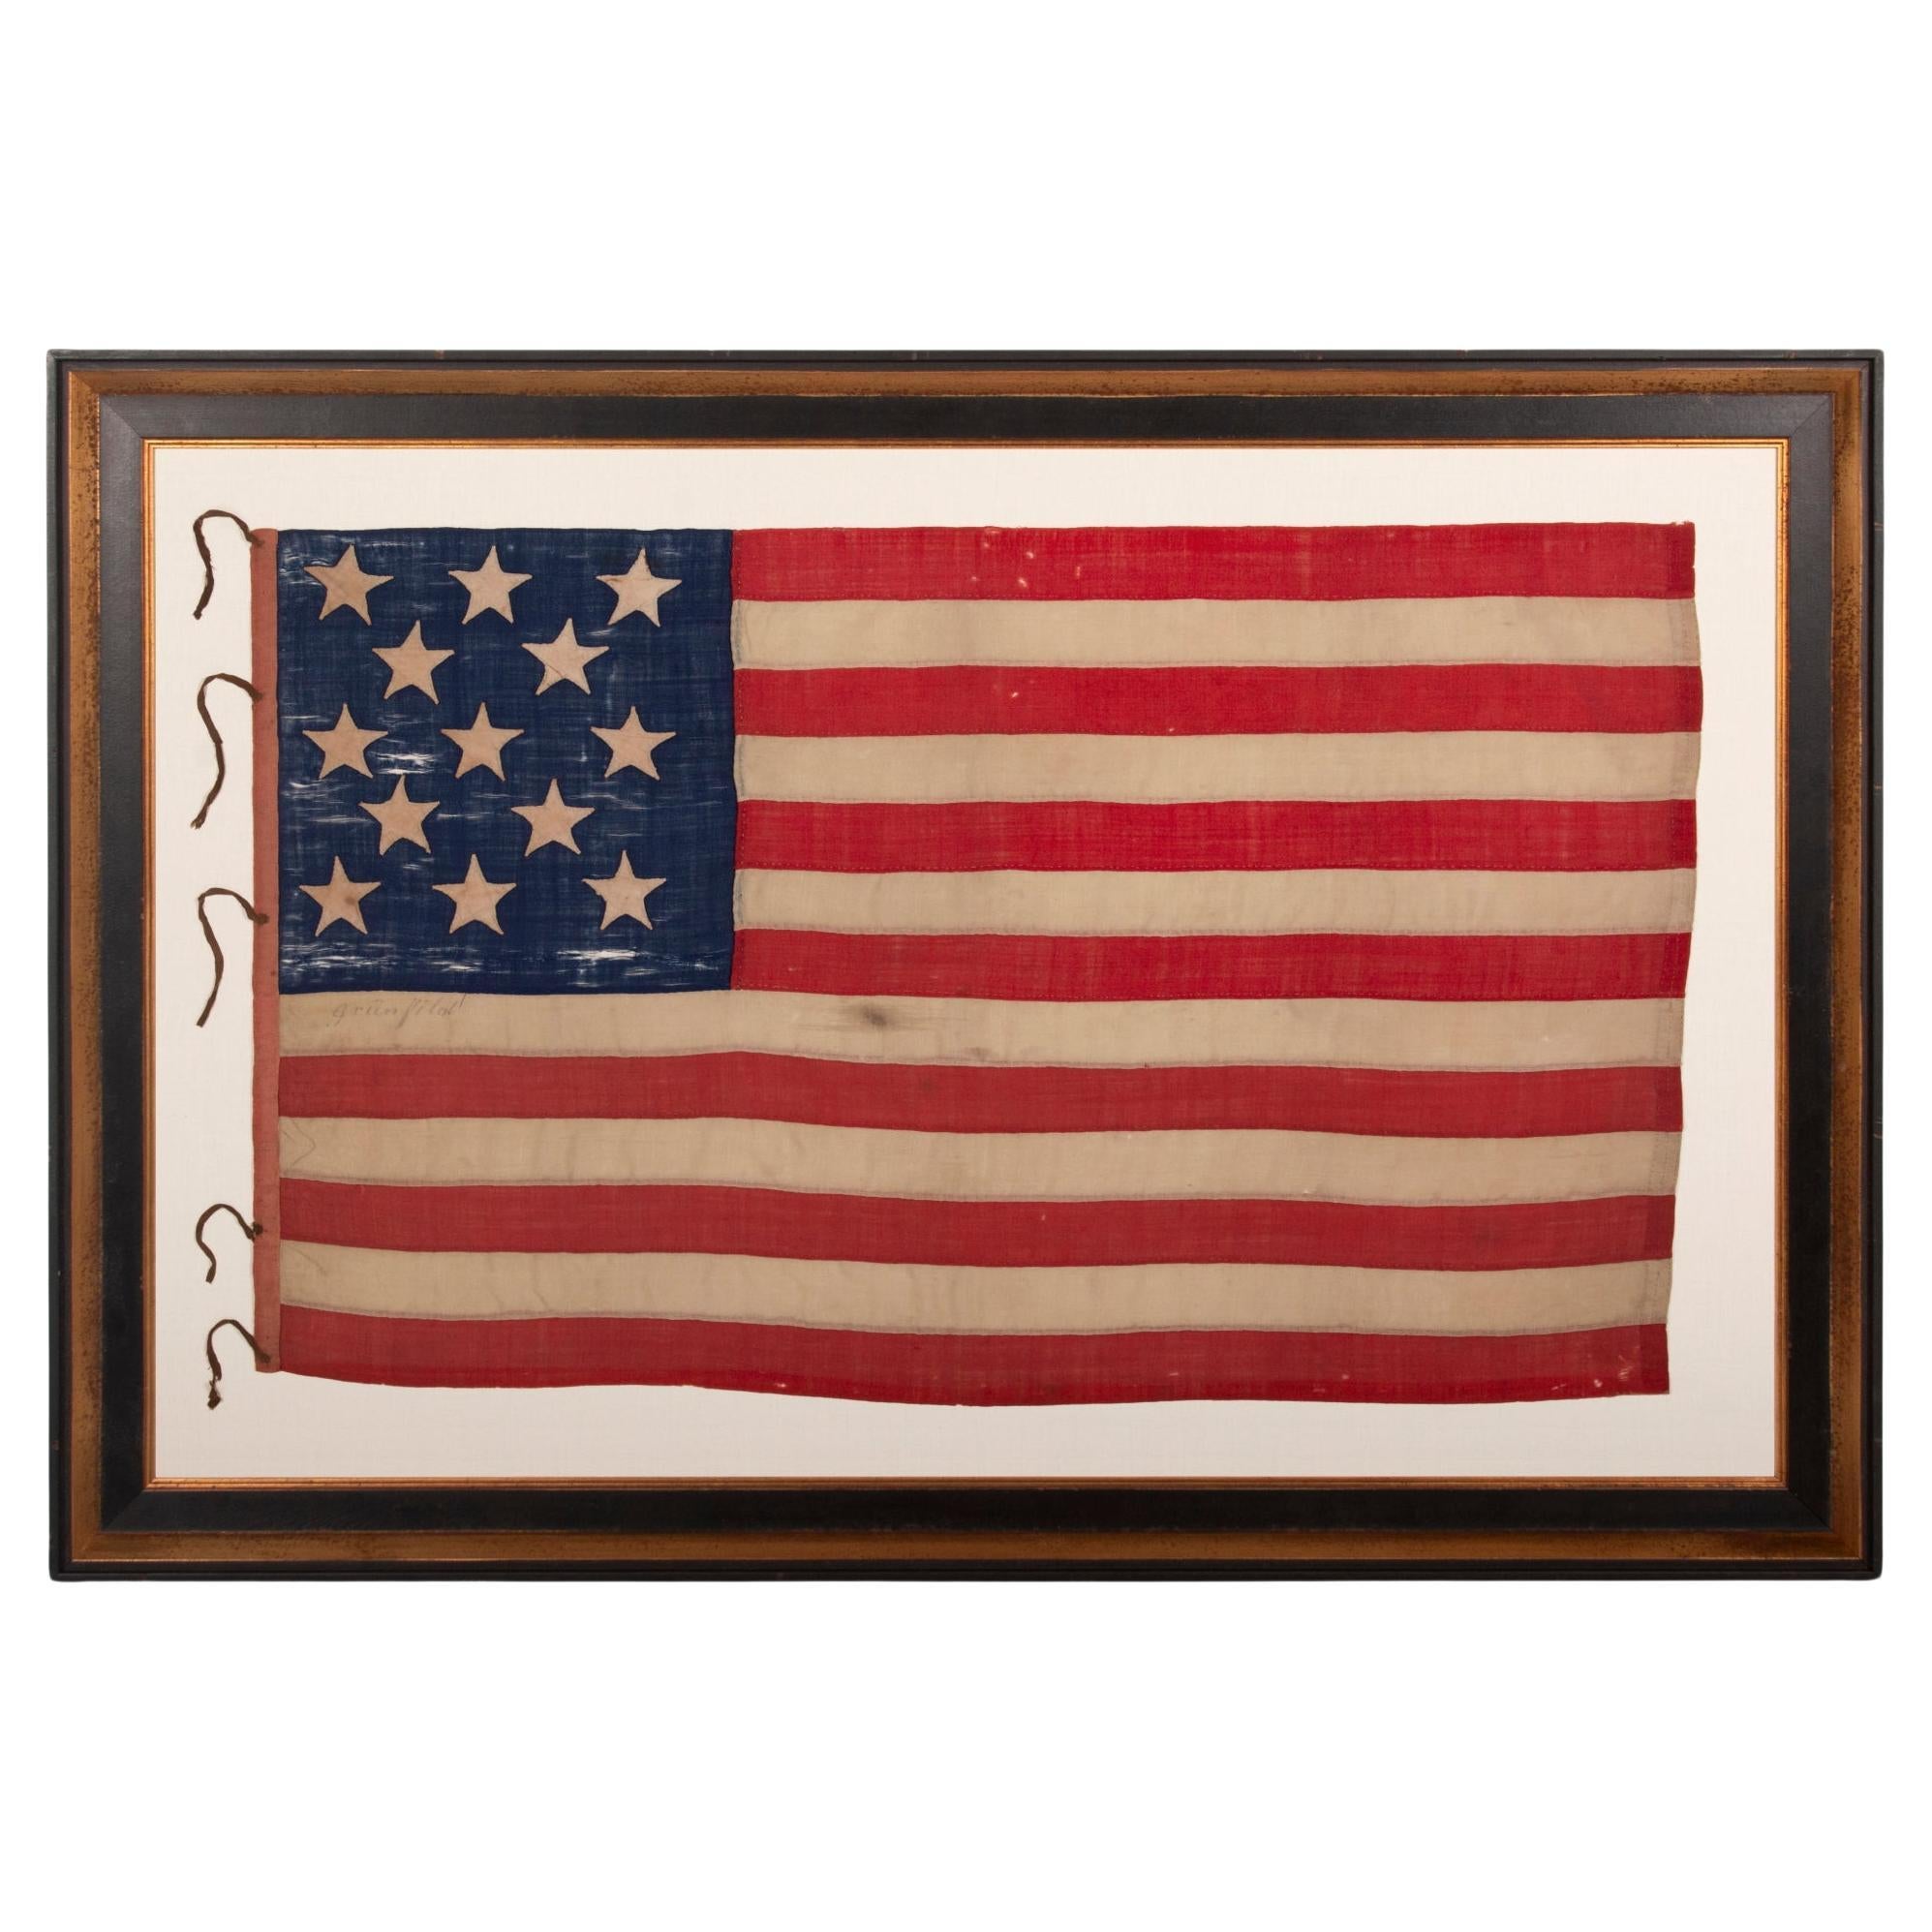 Handgenähte amerikanische Flagge mit 13 Sternen, signiert Grunfild, ca. 1861-1877